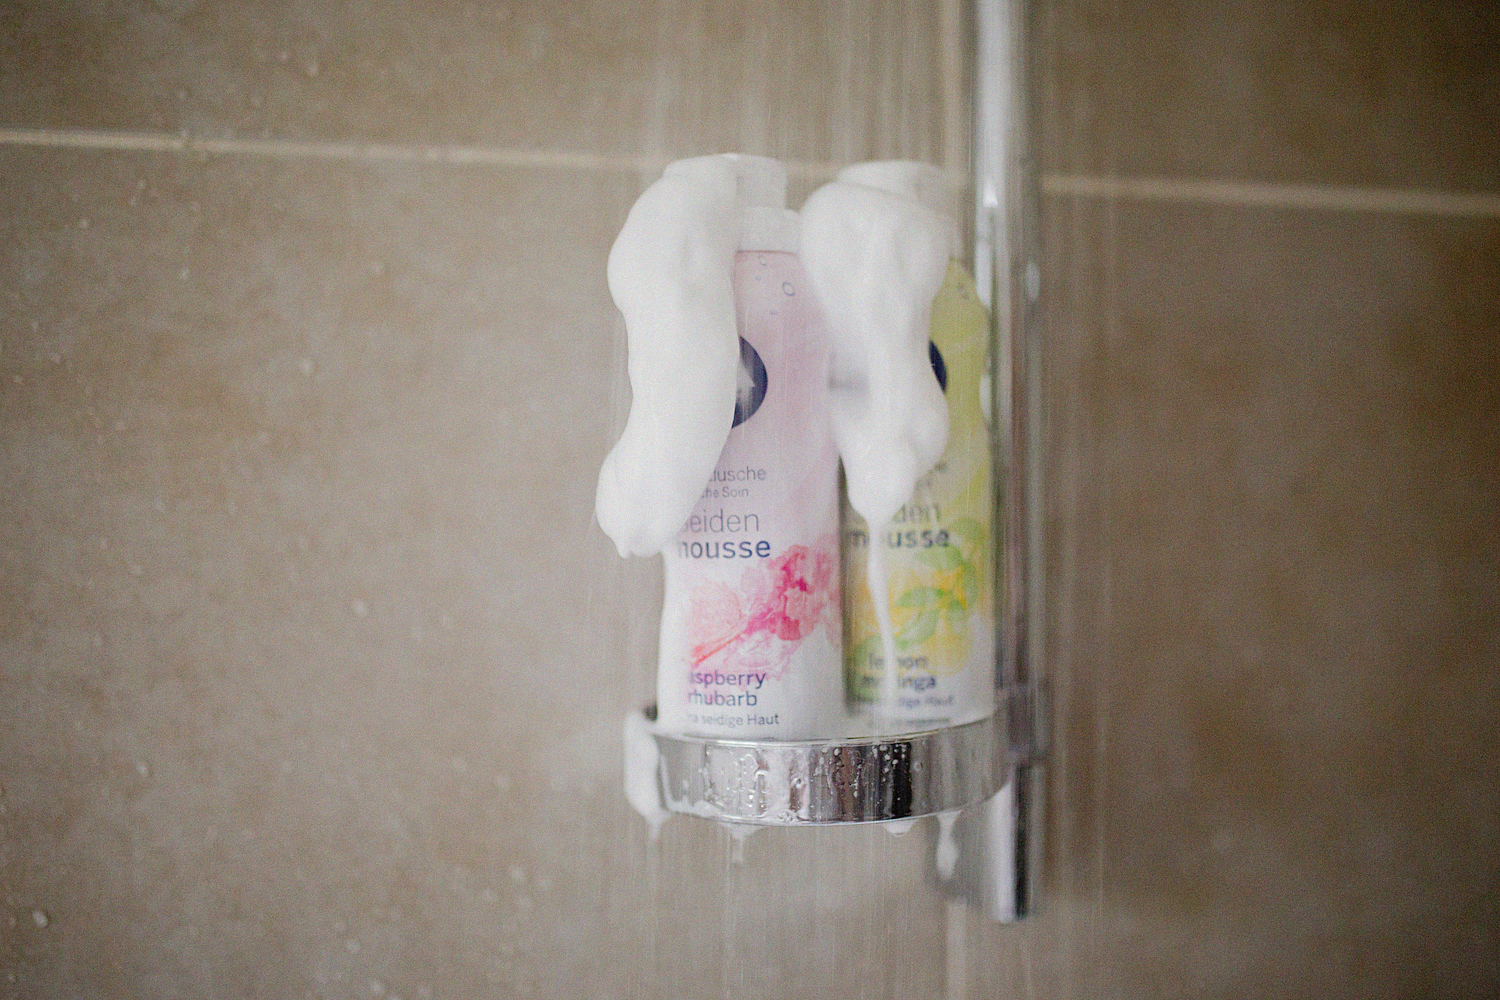 NIVEA Seiden-Mousse Pflegeduschen dusch dich happy